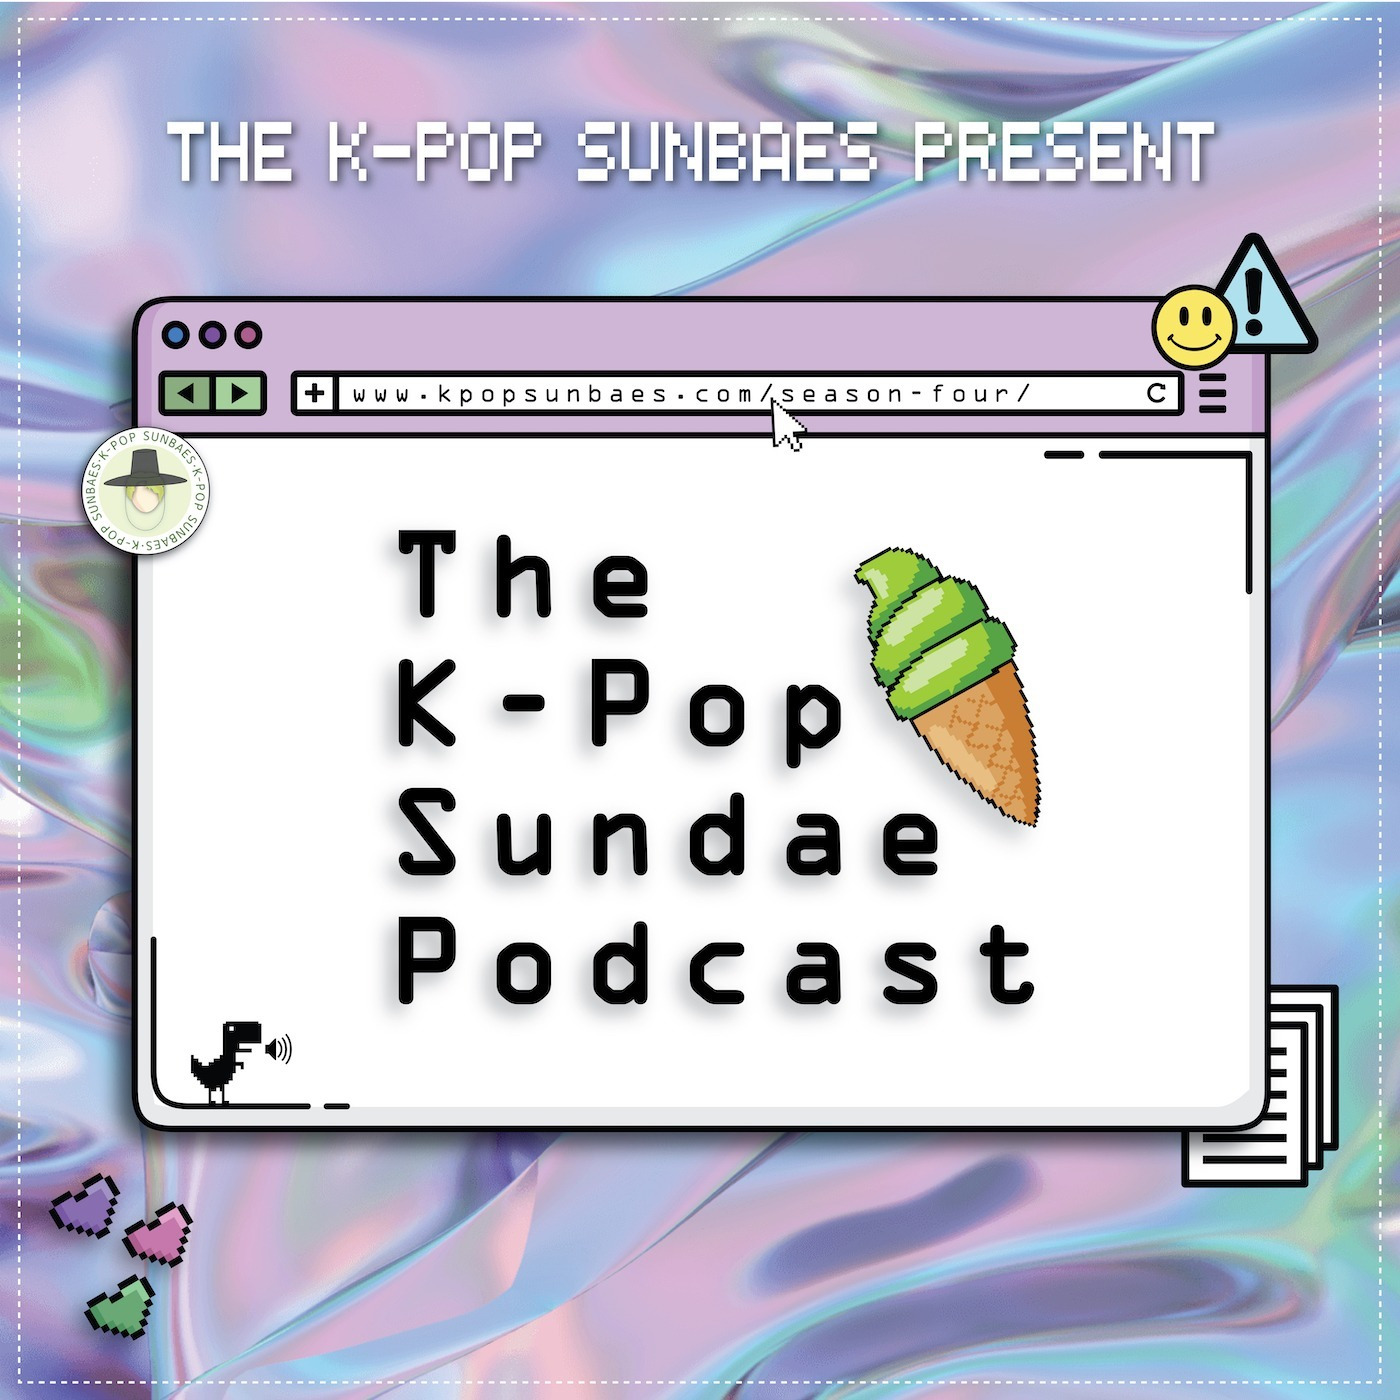 The K-Pop Sundae Podcast